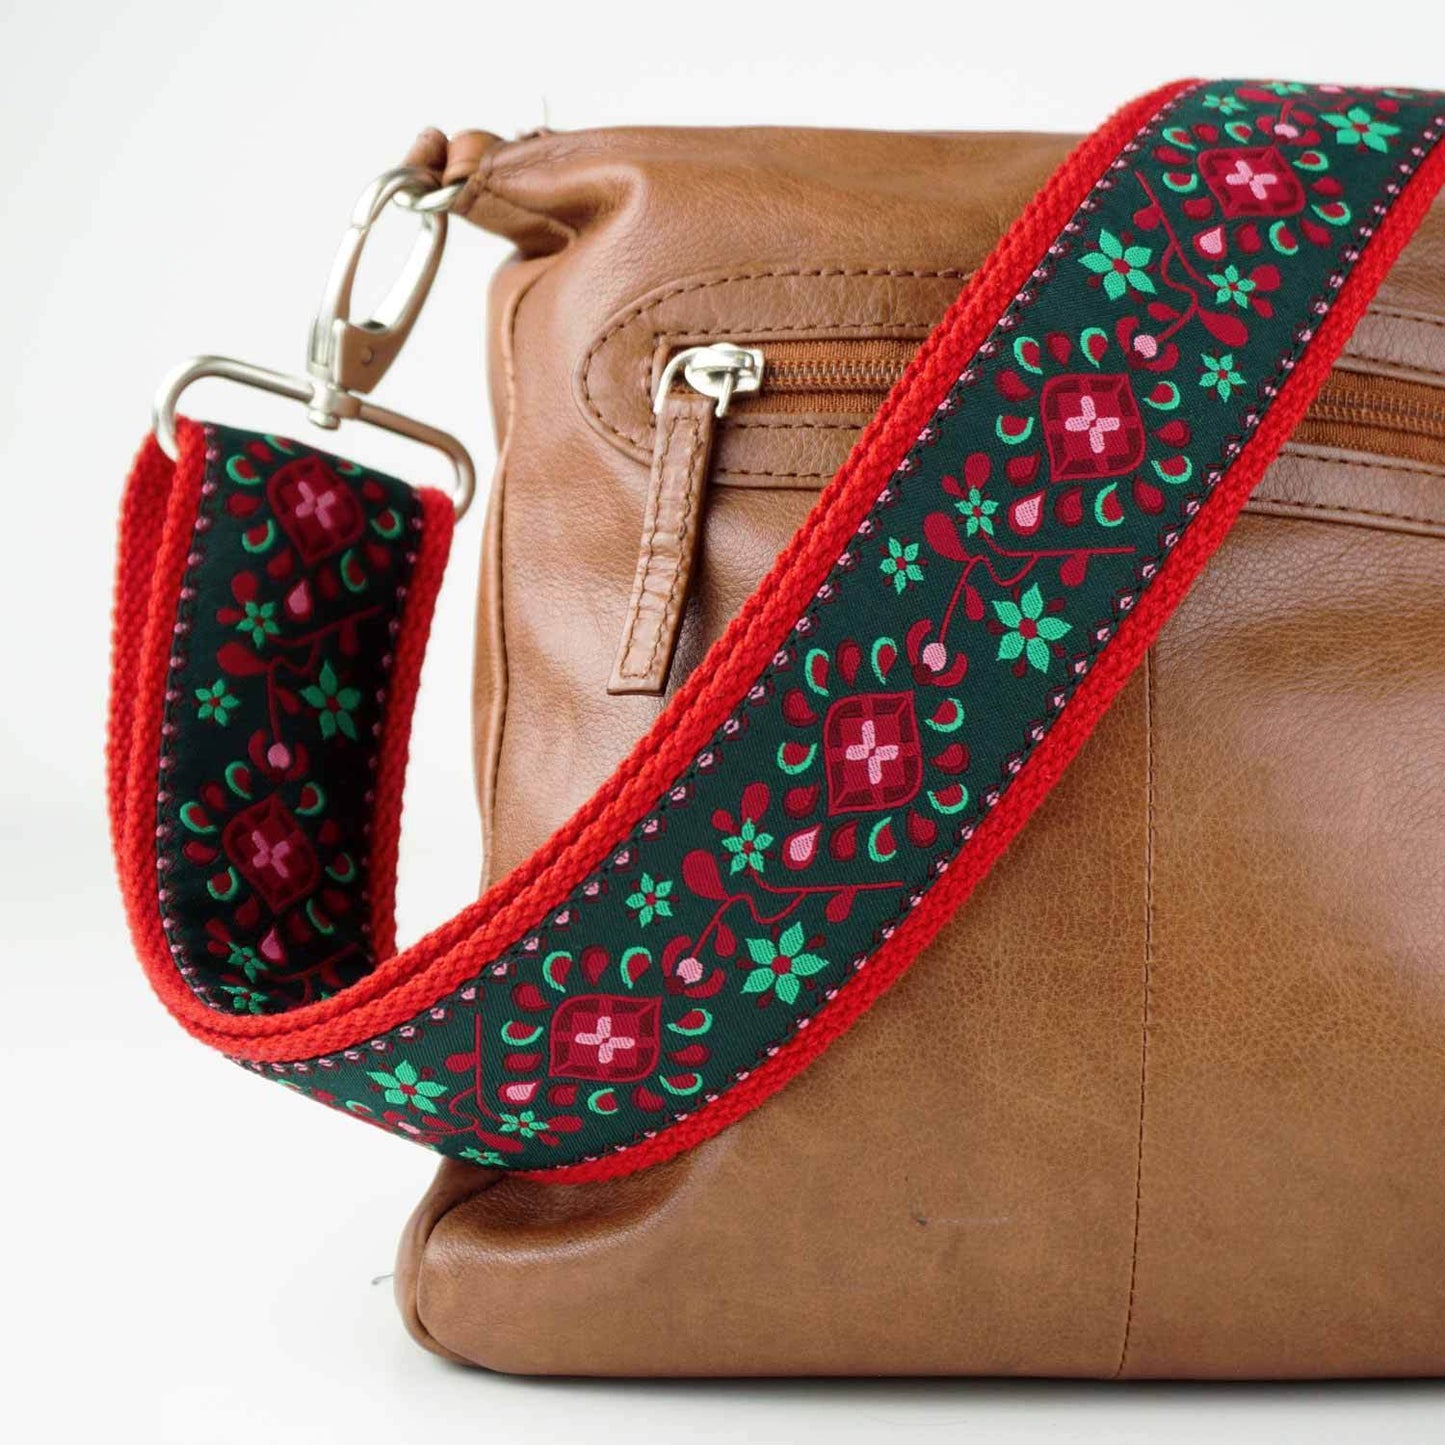 Taschengurt bunt mit Karabiner und Blumen Muster in rot und grün mit brauner Handtasche